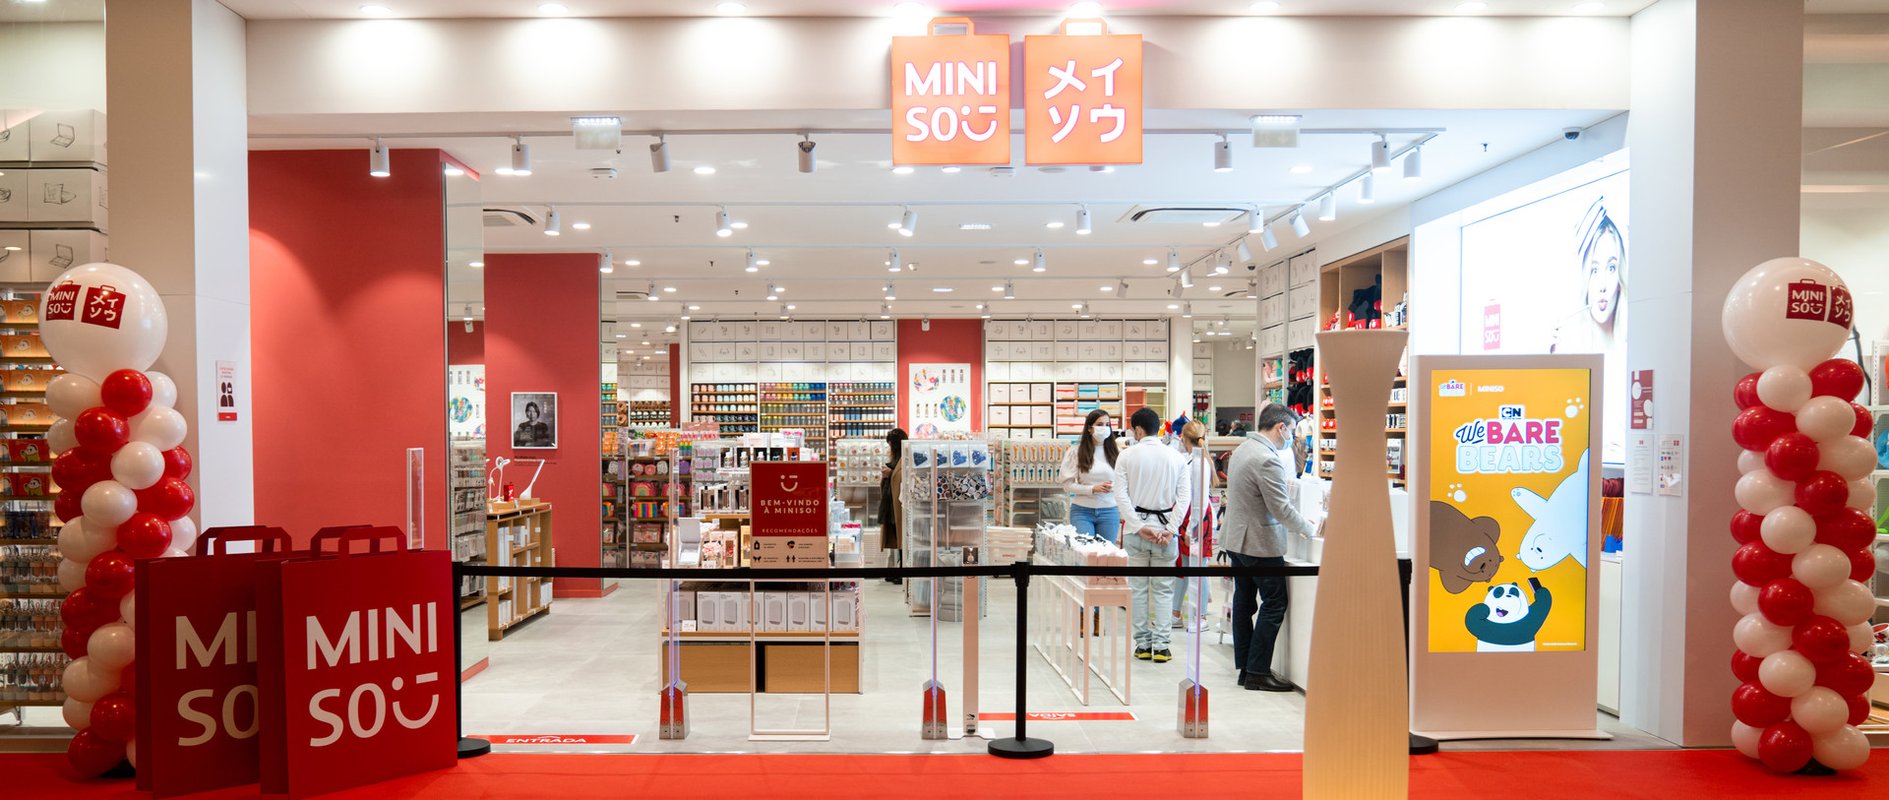 Marca de decoração Miniso planeia abrir 20 lojas em Portugal